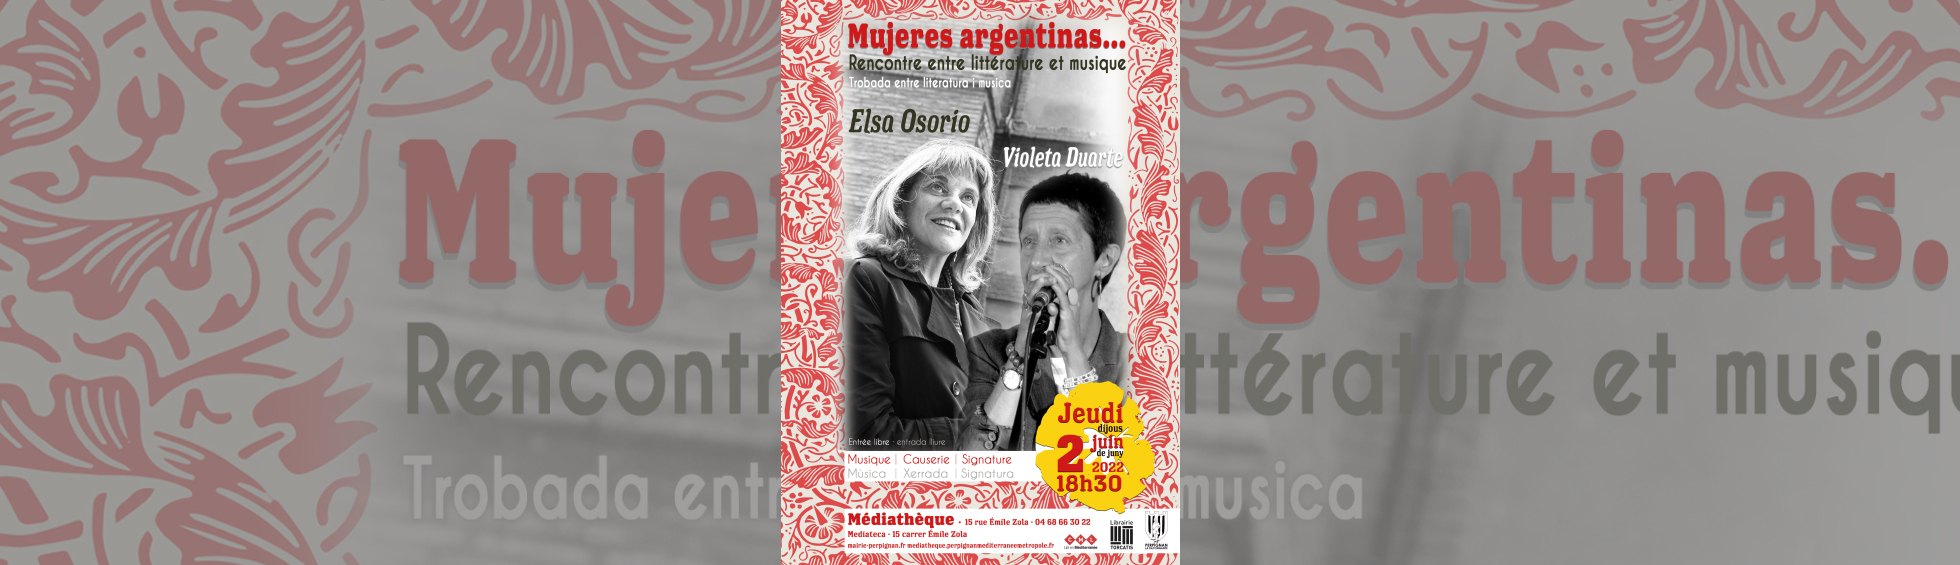 affiche - Mujeres argentinas...photo noir et blanc de Elsa Osorio et Violeta Duarte